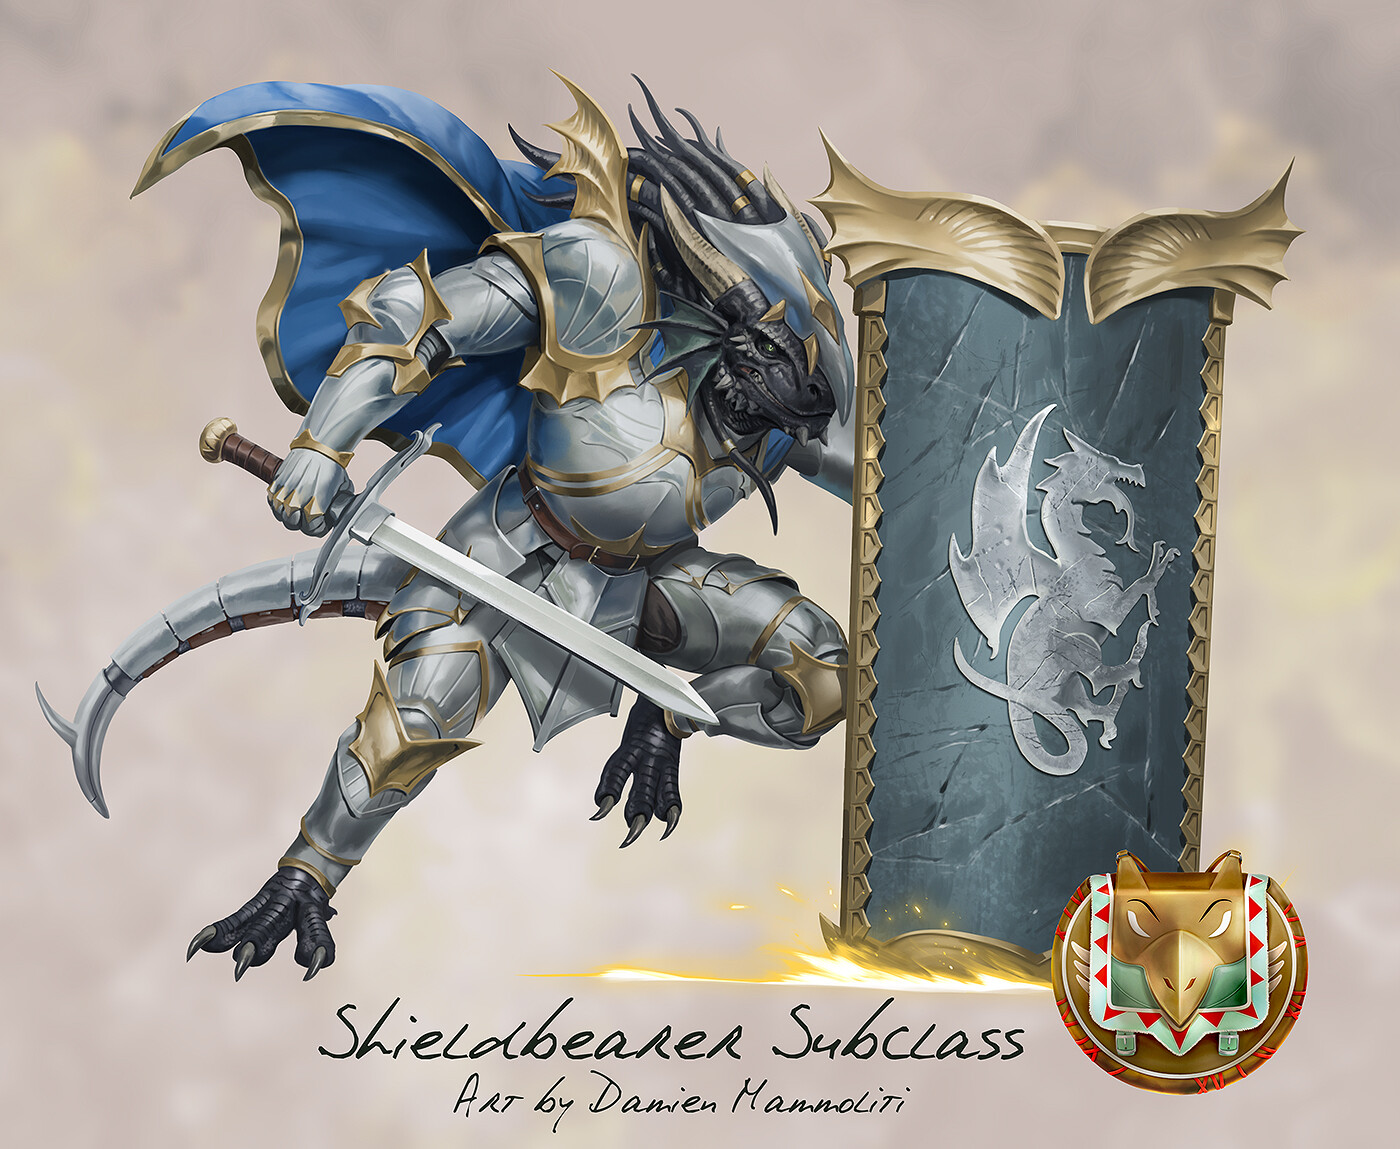 The Griffon's Saddlebag} Forgework Dragon Shield